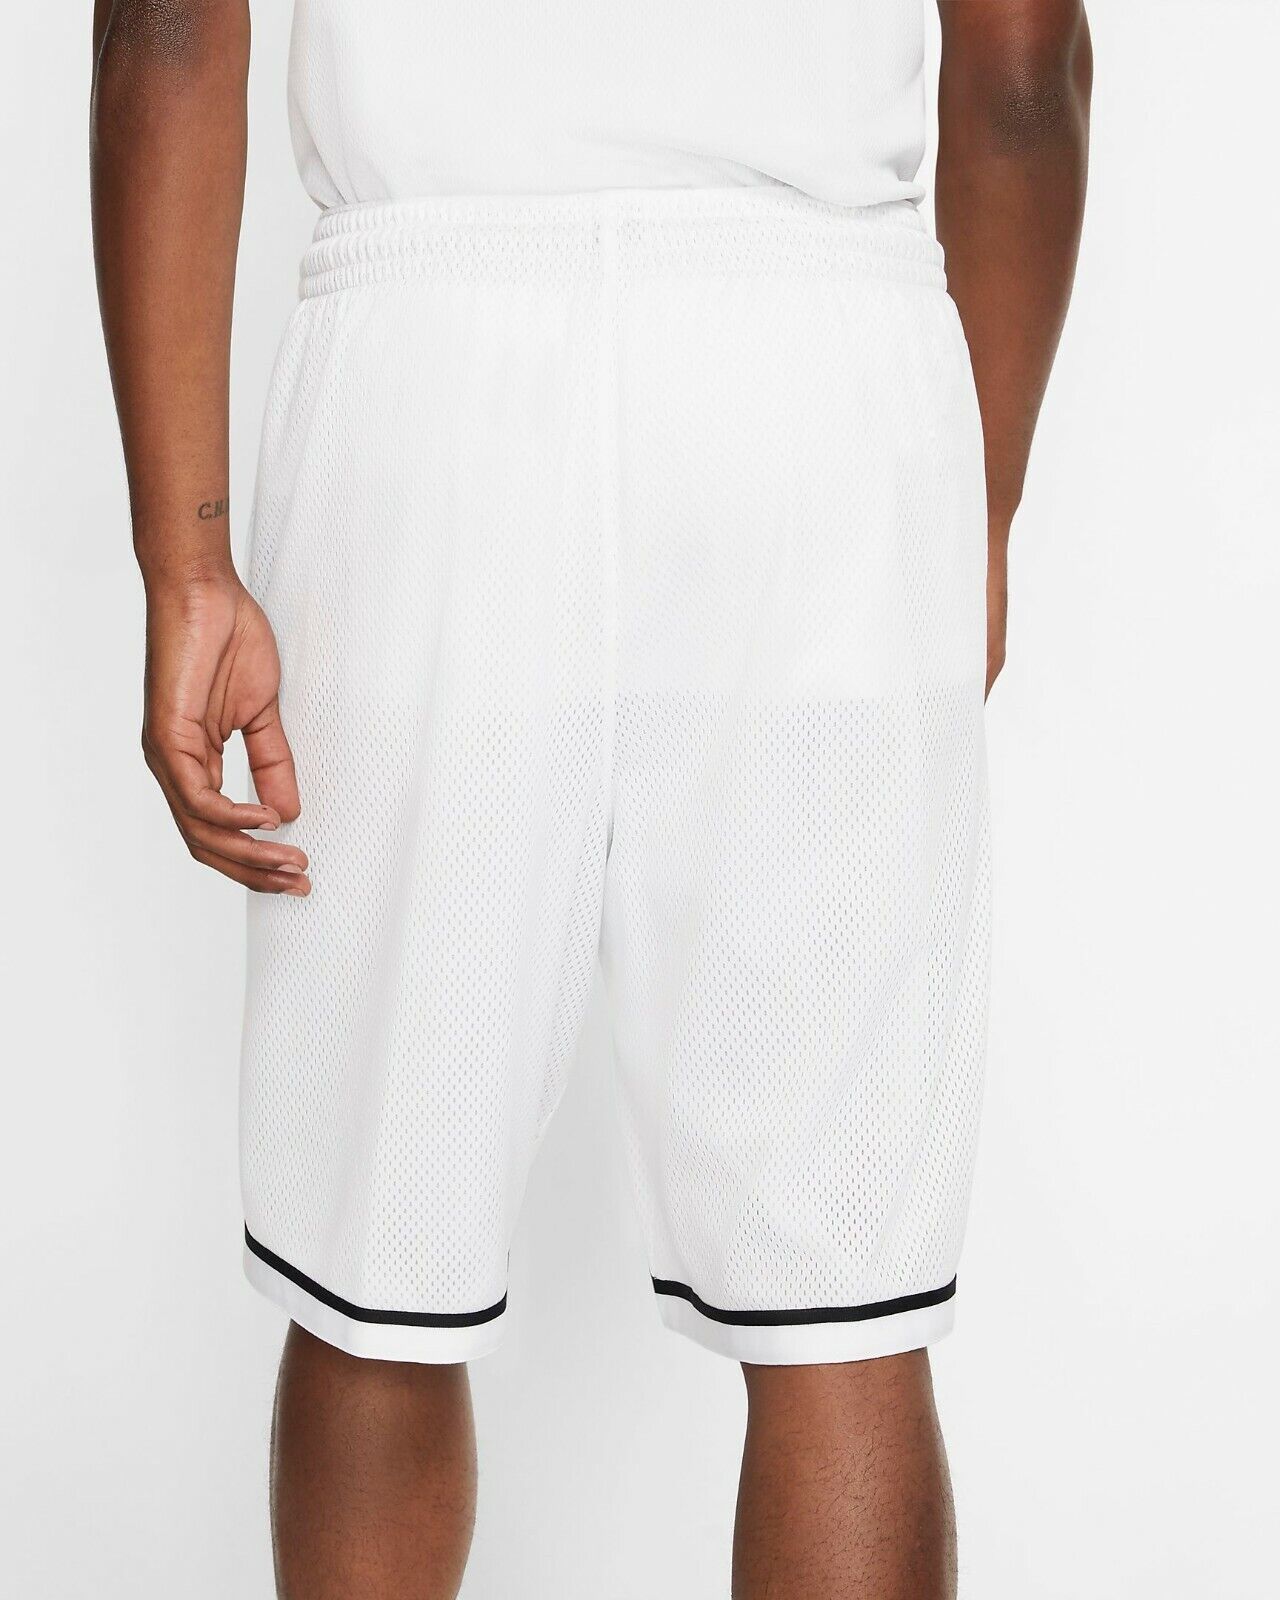 Men's Nike Dri-FIT Classic Basketball Shorts, AQ5600 100 Multi Sizes White/Black